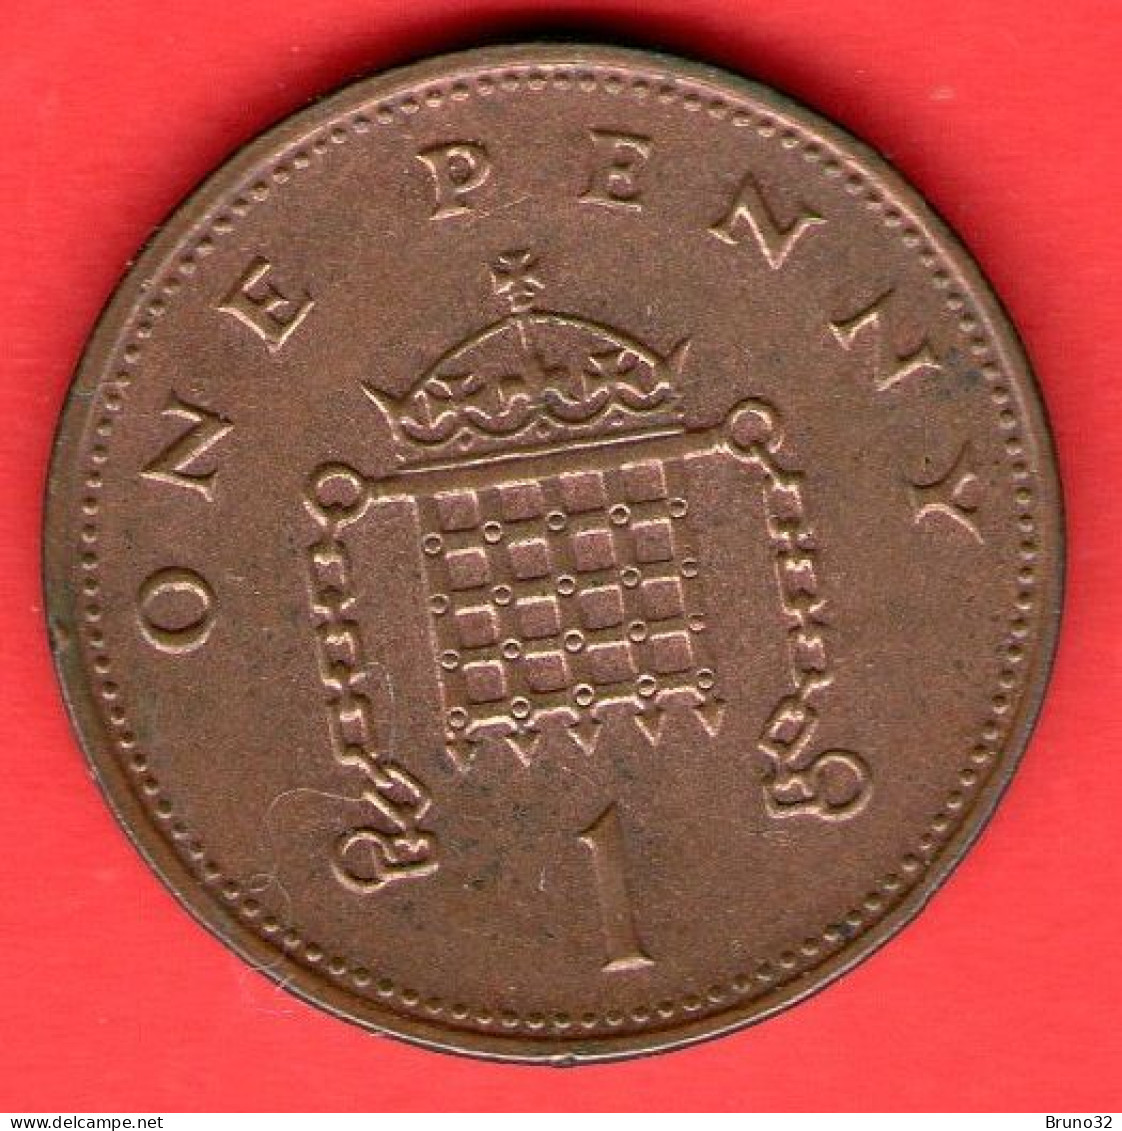 Gran Bretagna - Great Britain - GB - 1 Penny 1996 - QFDC/aUNC - Come Da Foto - 1 Penny & 1 New Penny